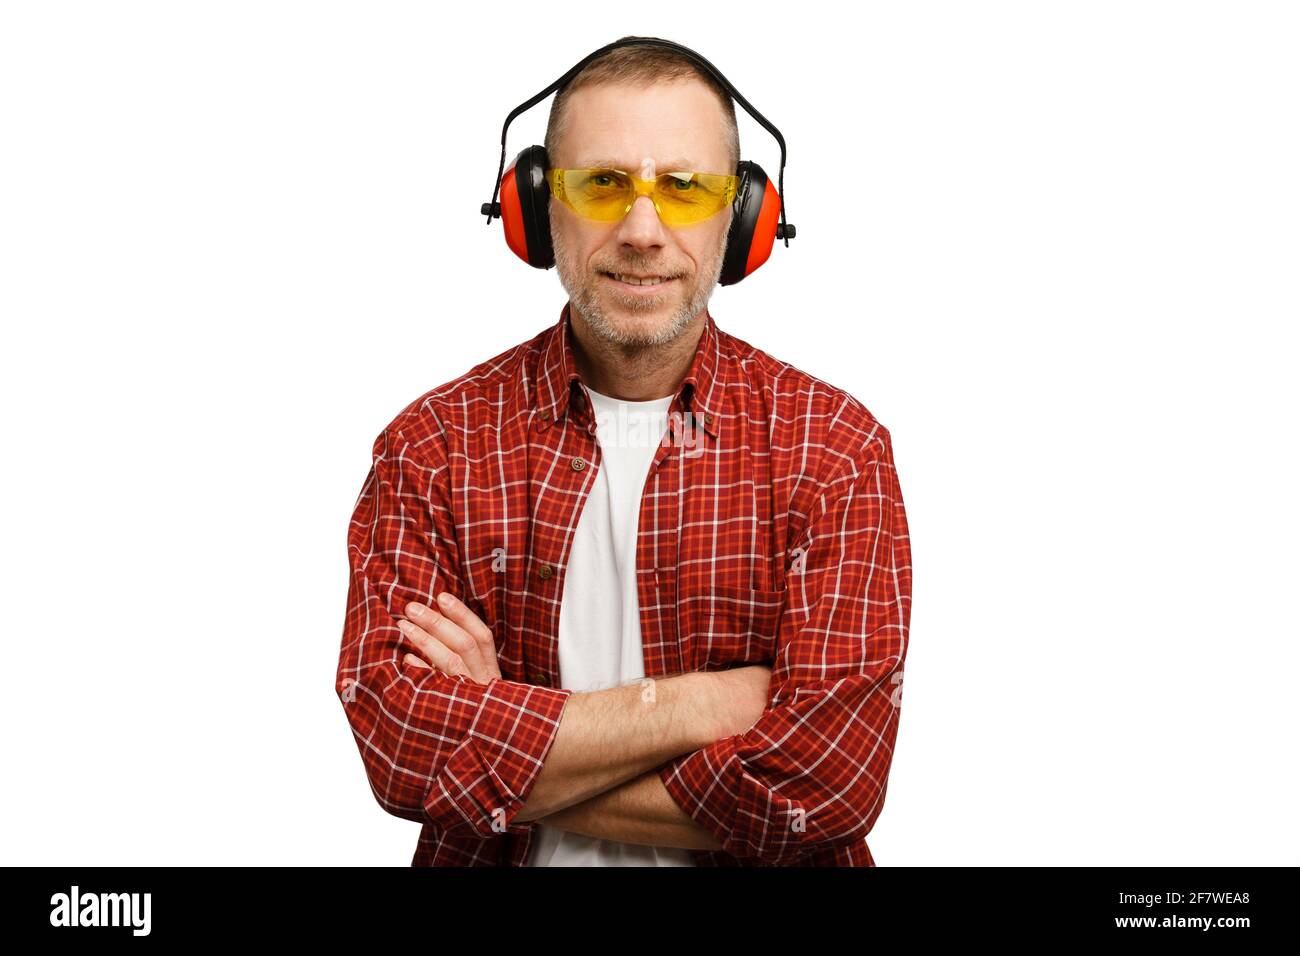 Une personne portant des lunettes de protection et des protections auditives. Prise de vue en studio isolée sur fond blanc. Banque D'Images